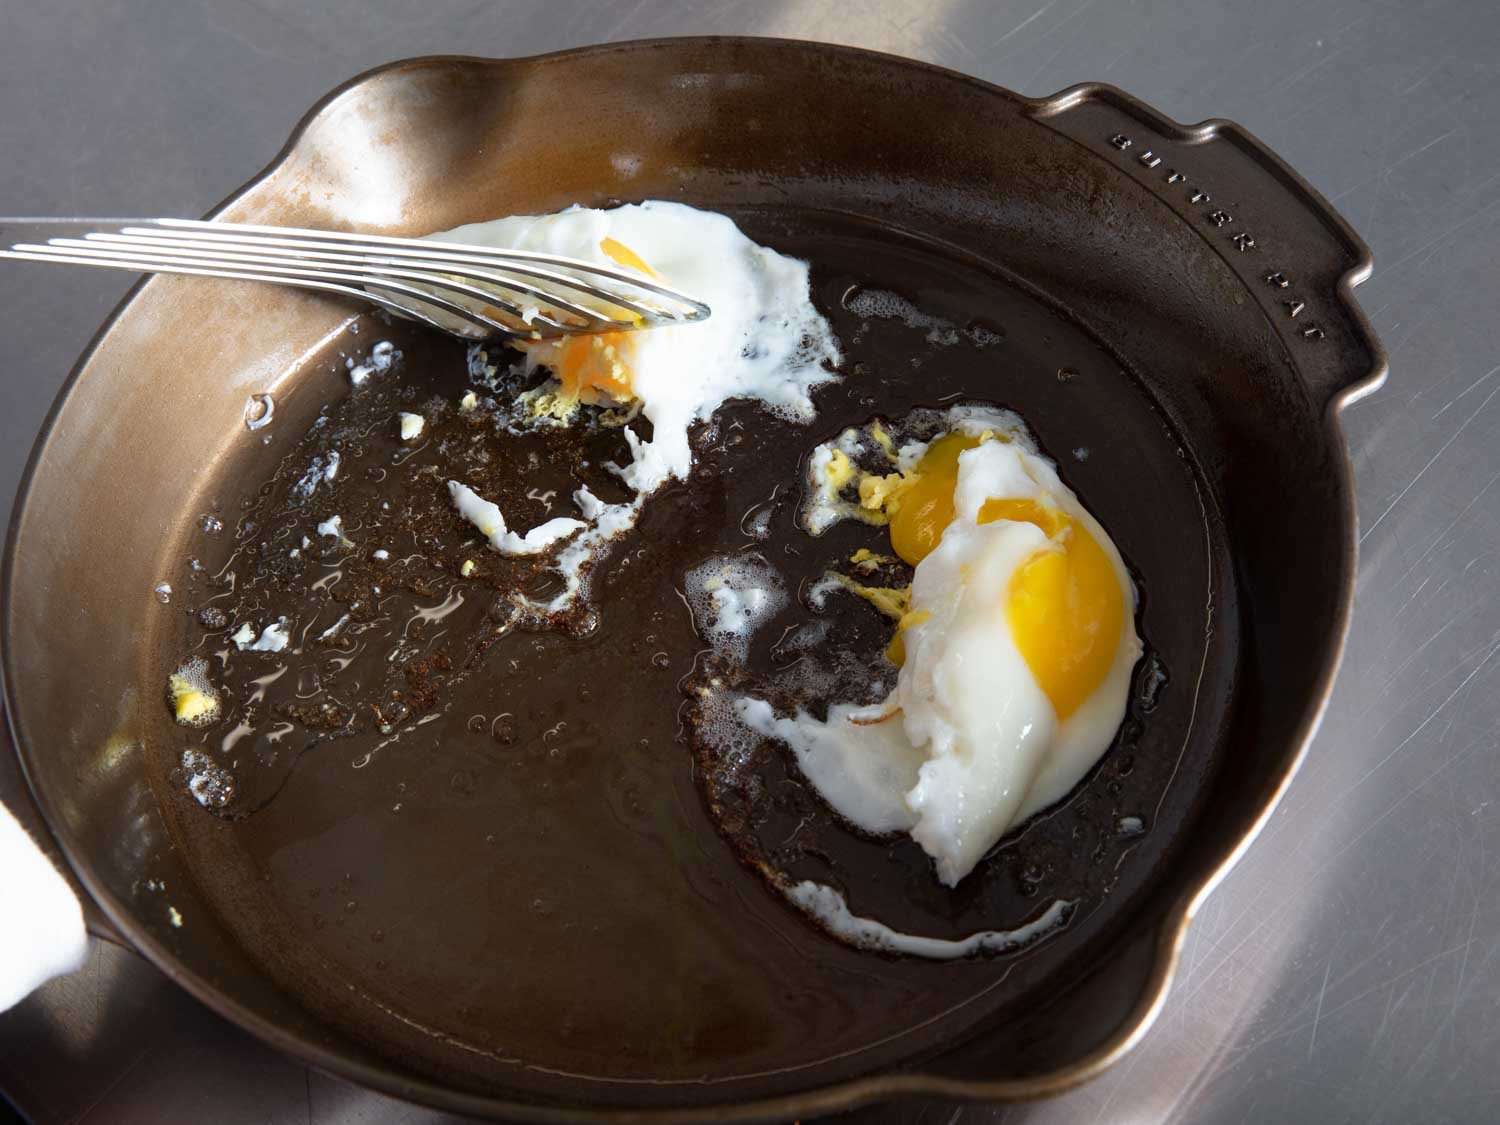 几乎每一个煎锅里的鸡蛋都被卡住了，比如图中所示的Butter Pat煎锅，当抹刀试图抬起它们时，鸡蛋会被扯破。